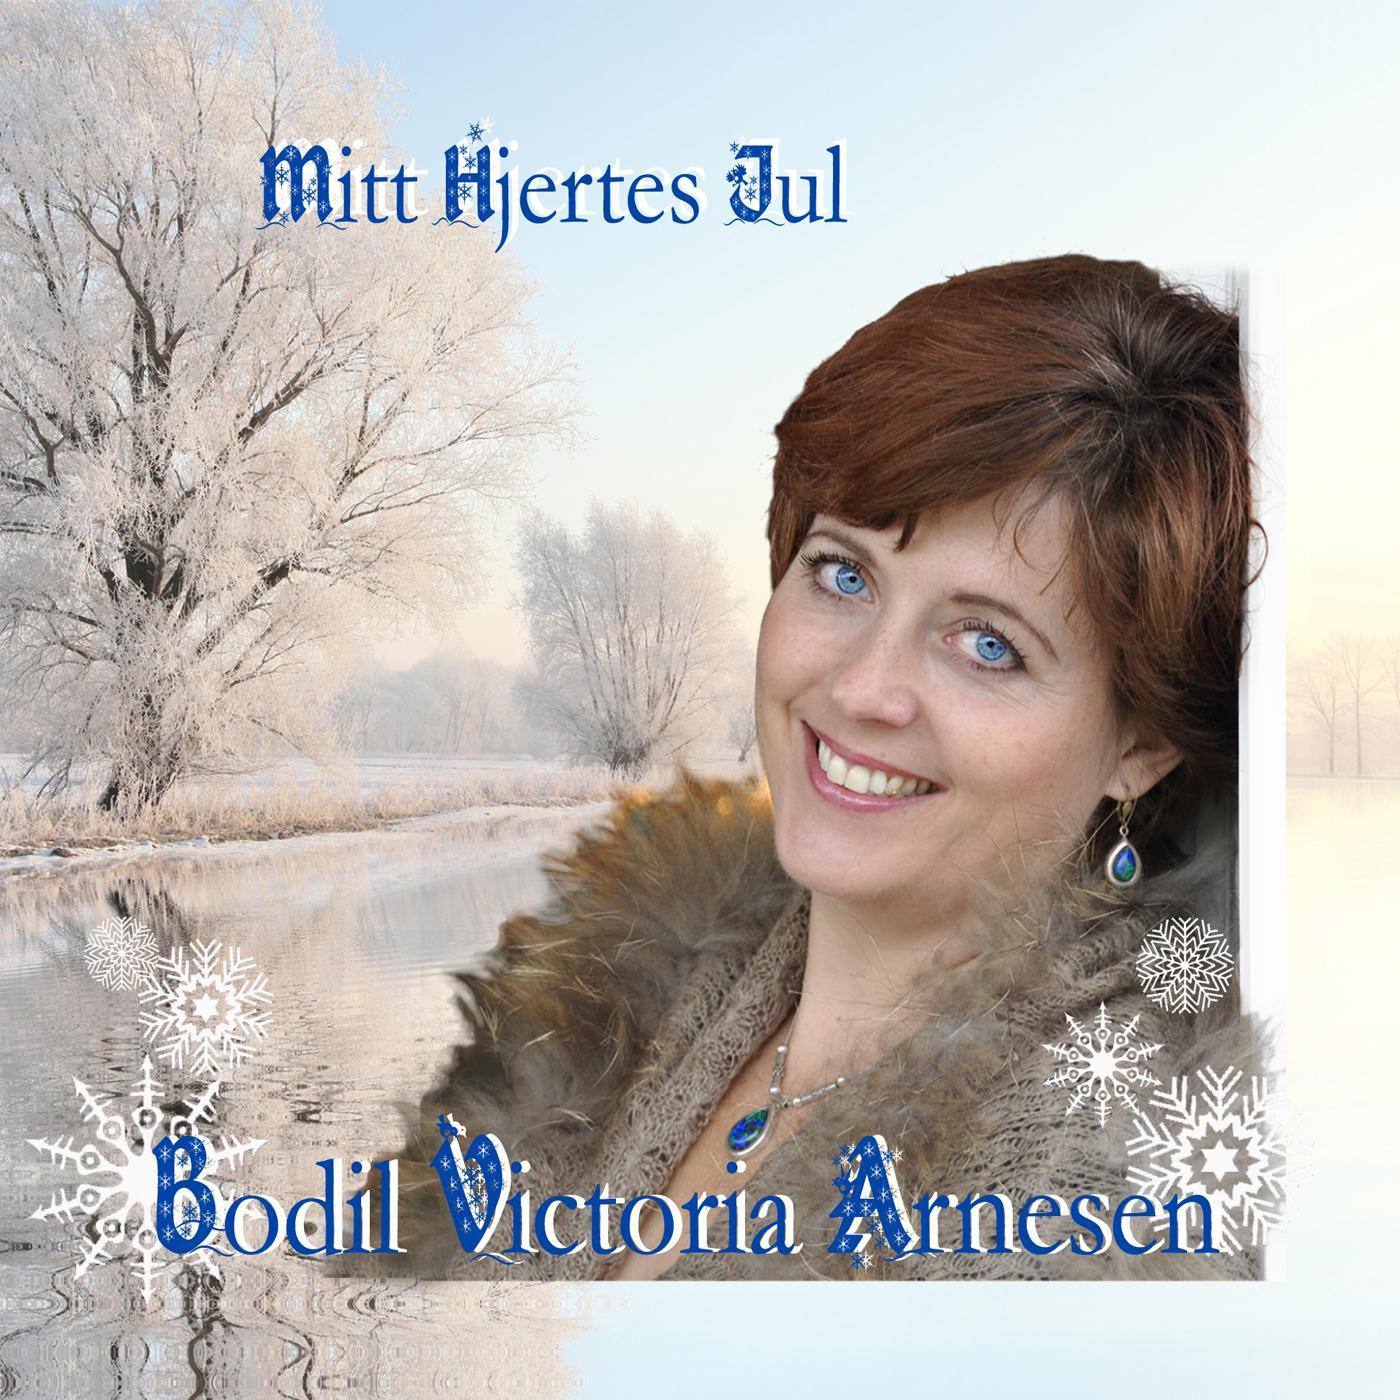 Mitt Hjertes Jul (Christmas in My Heart)